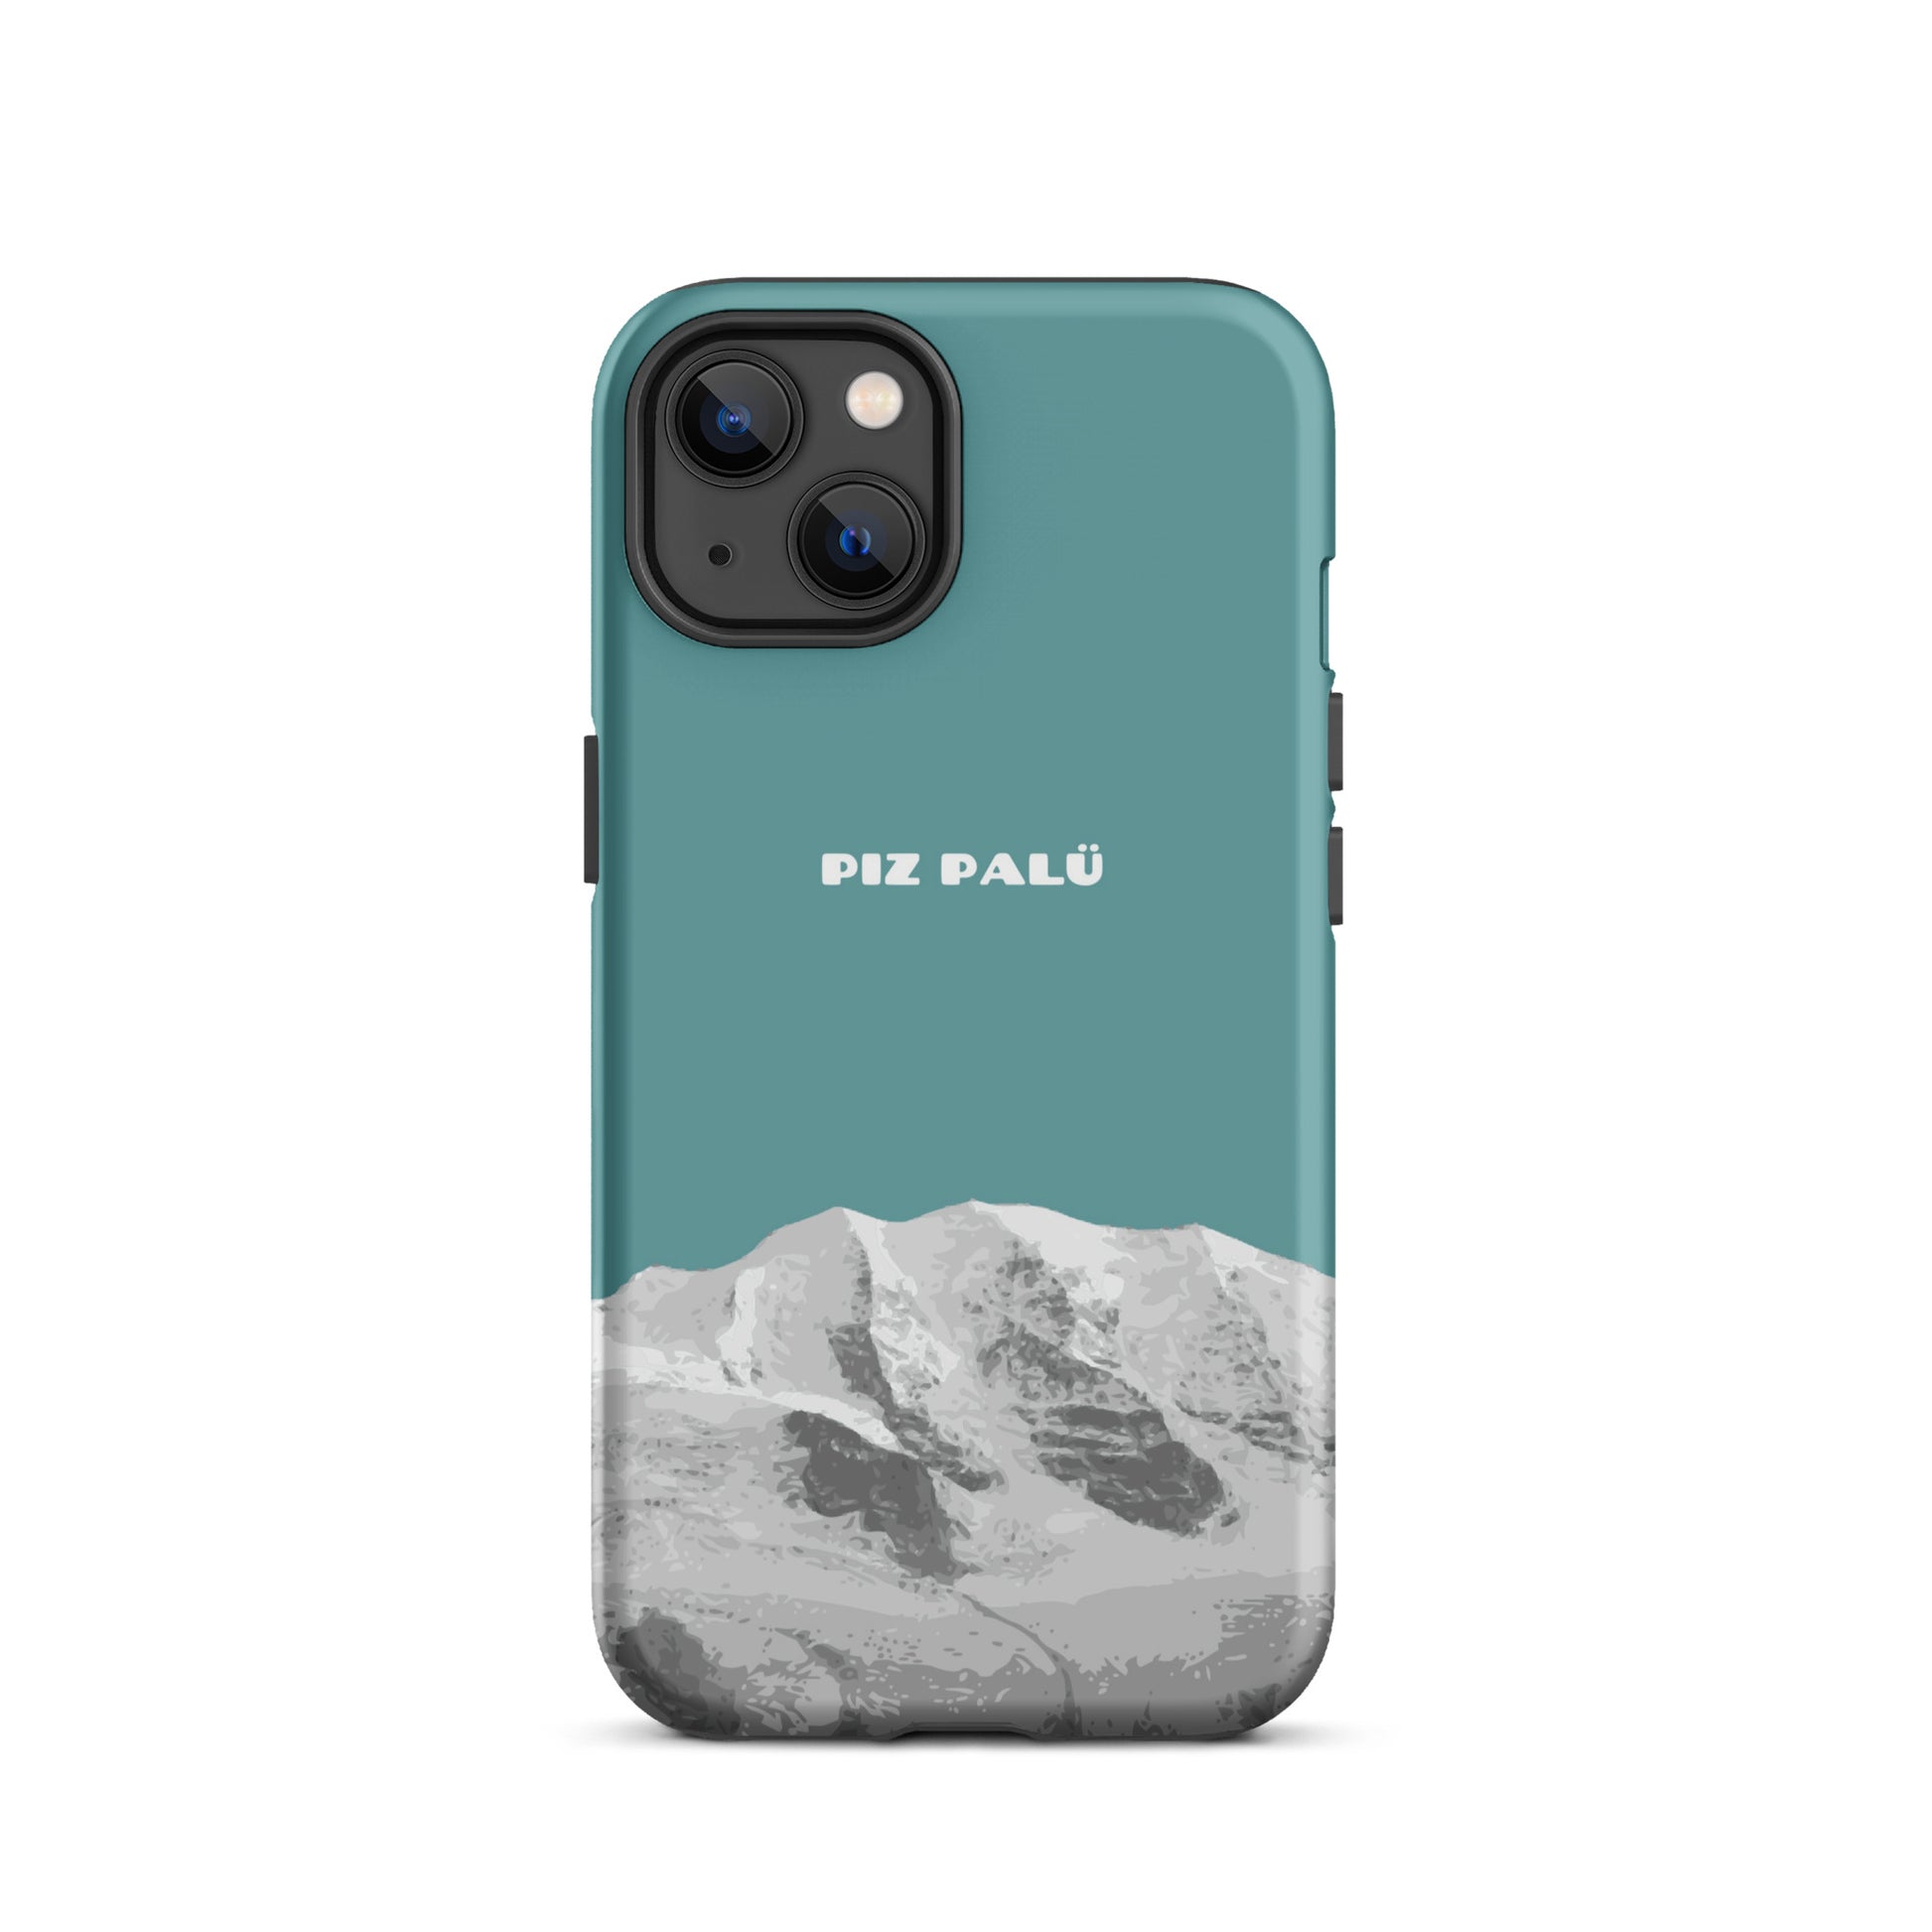 Hülle für das iPhone 13 von Apple in der Farbe Kadettenblau, dass den Piz Palü in Graubünden zeigt.